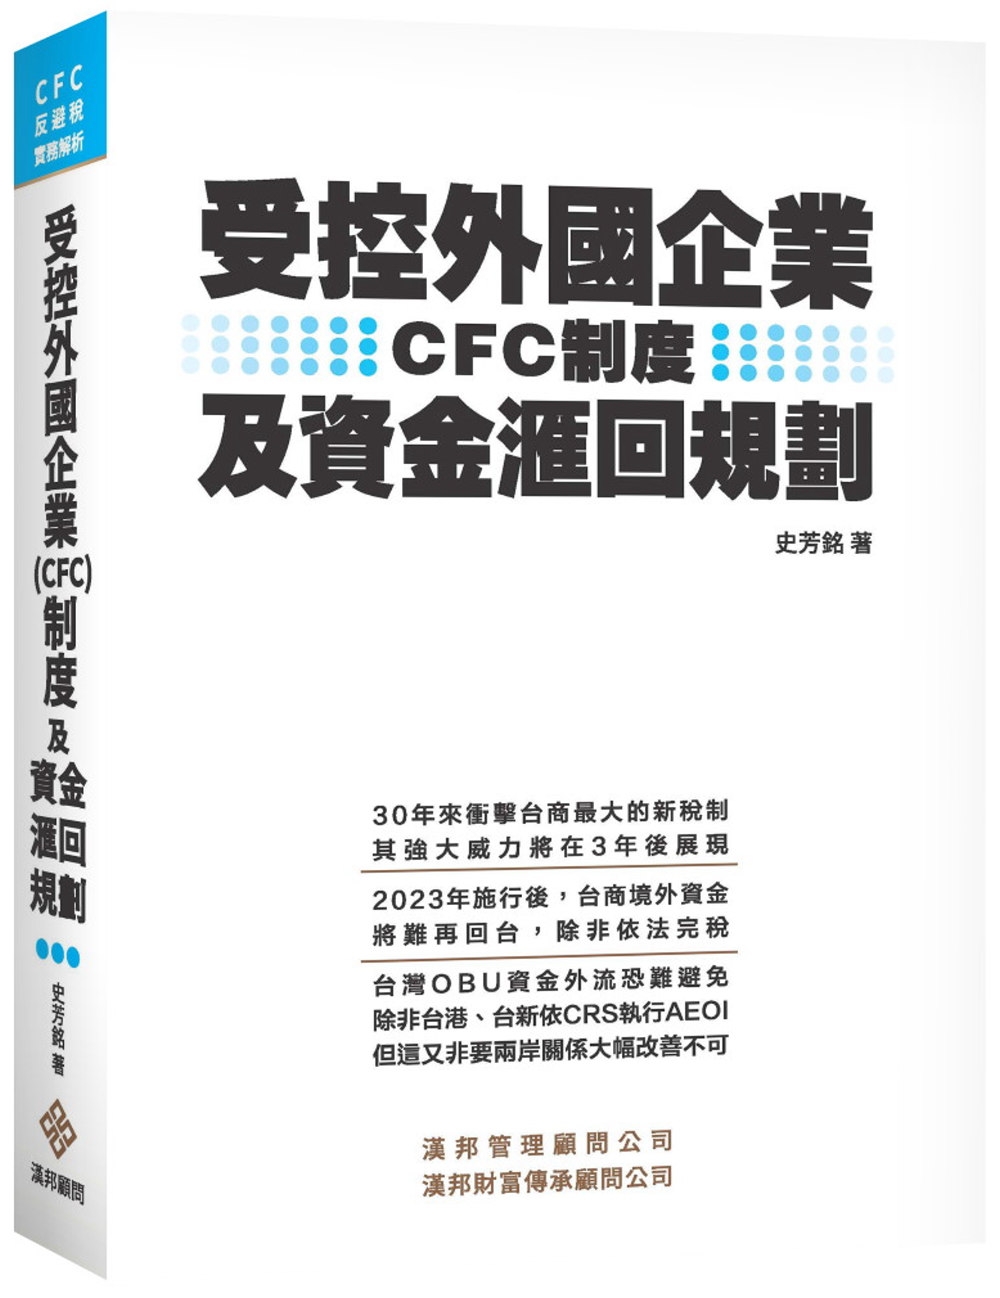 受控外國企業(CFC)制度及資金滙回規劃